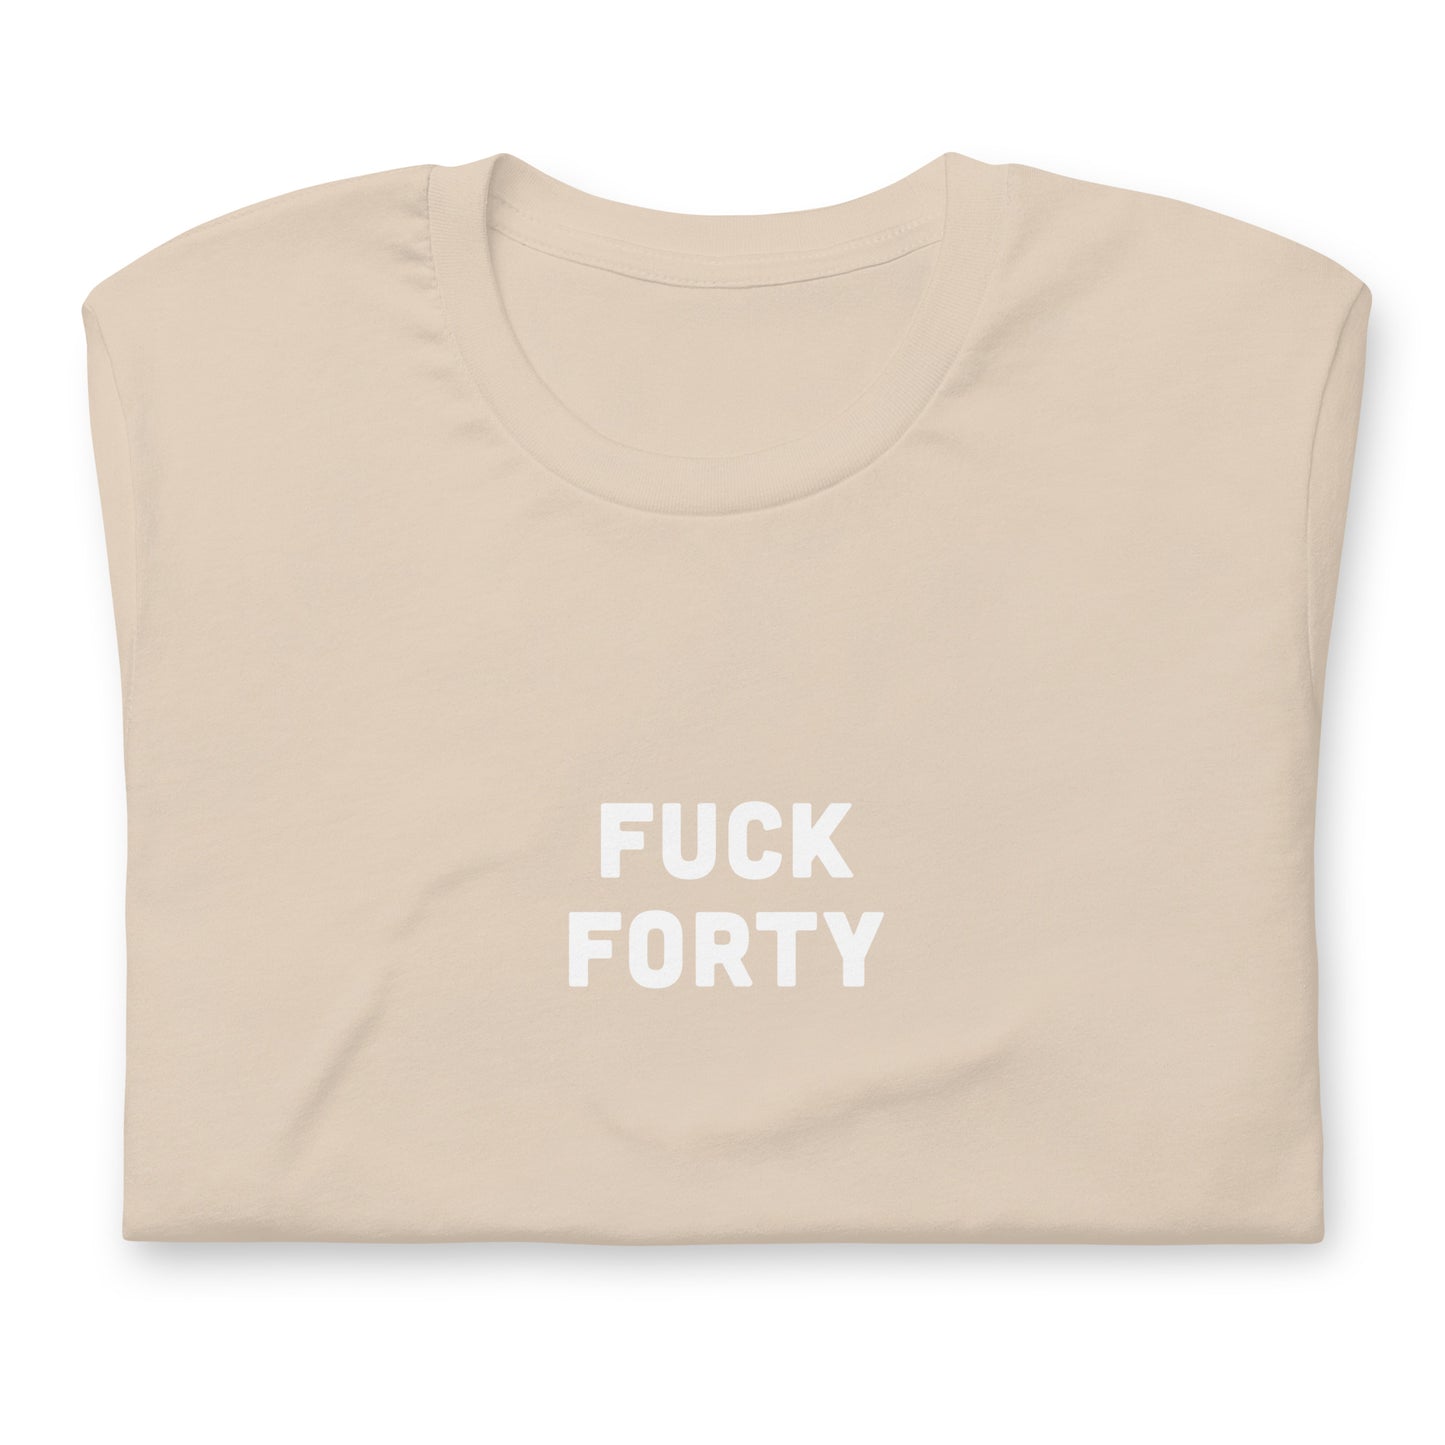 Fuck 40 T-Shirt Size L Color Asphalt